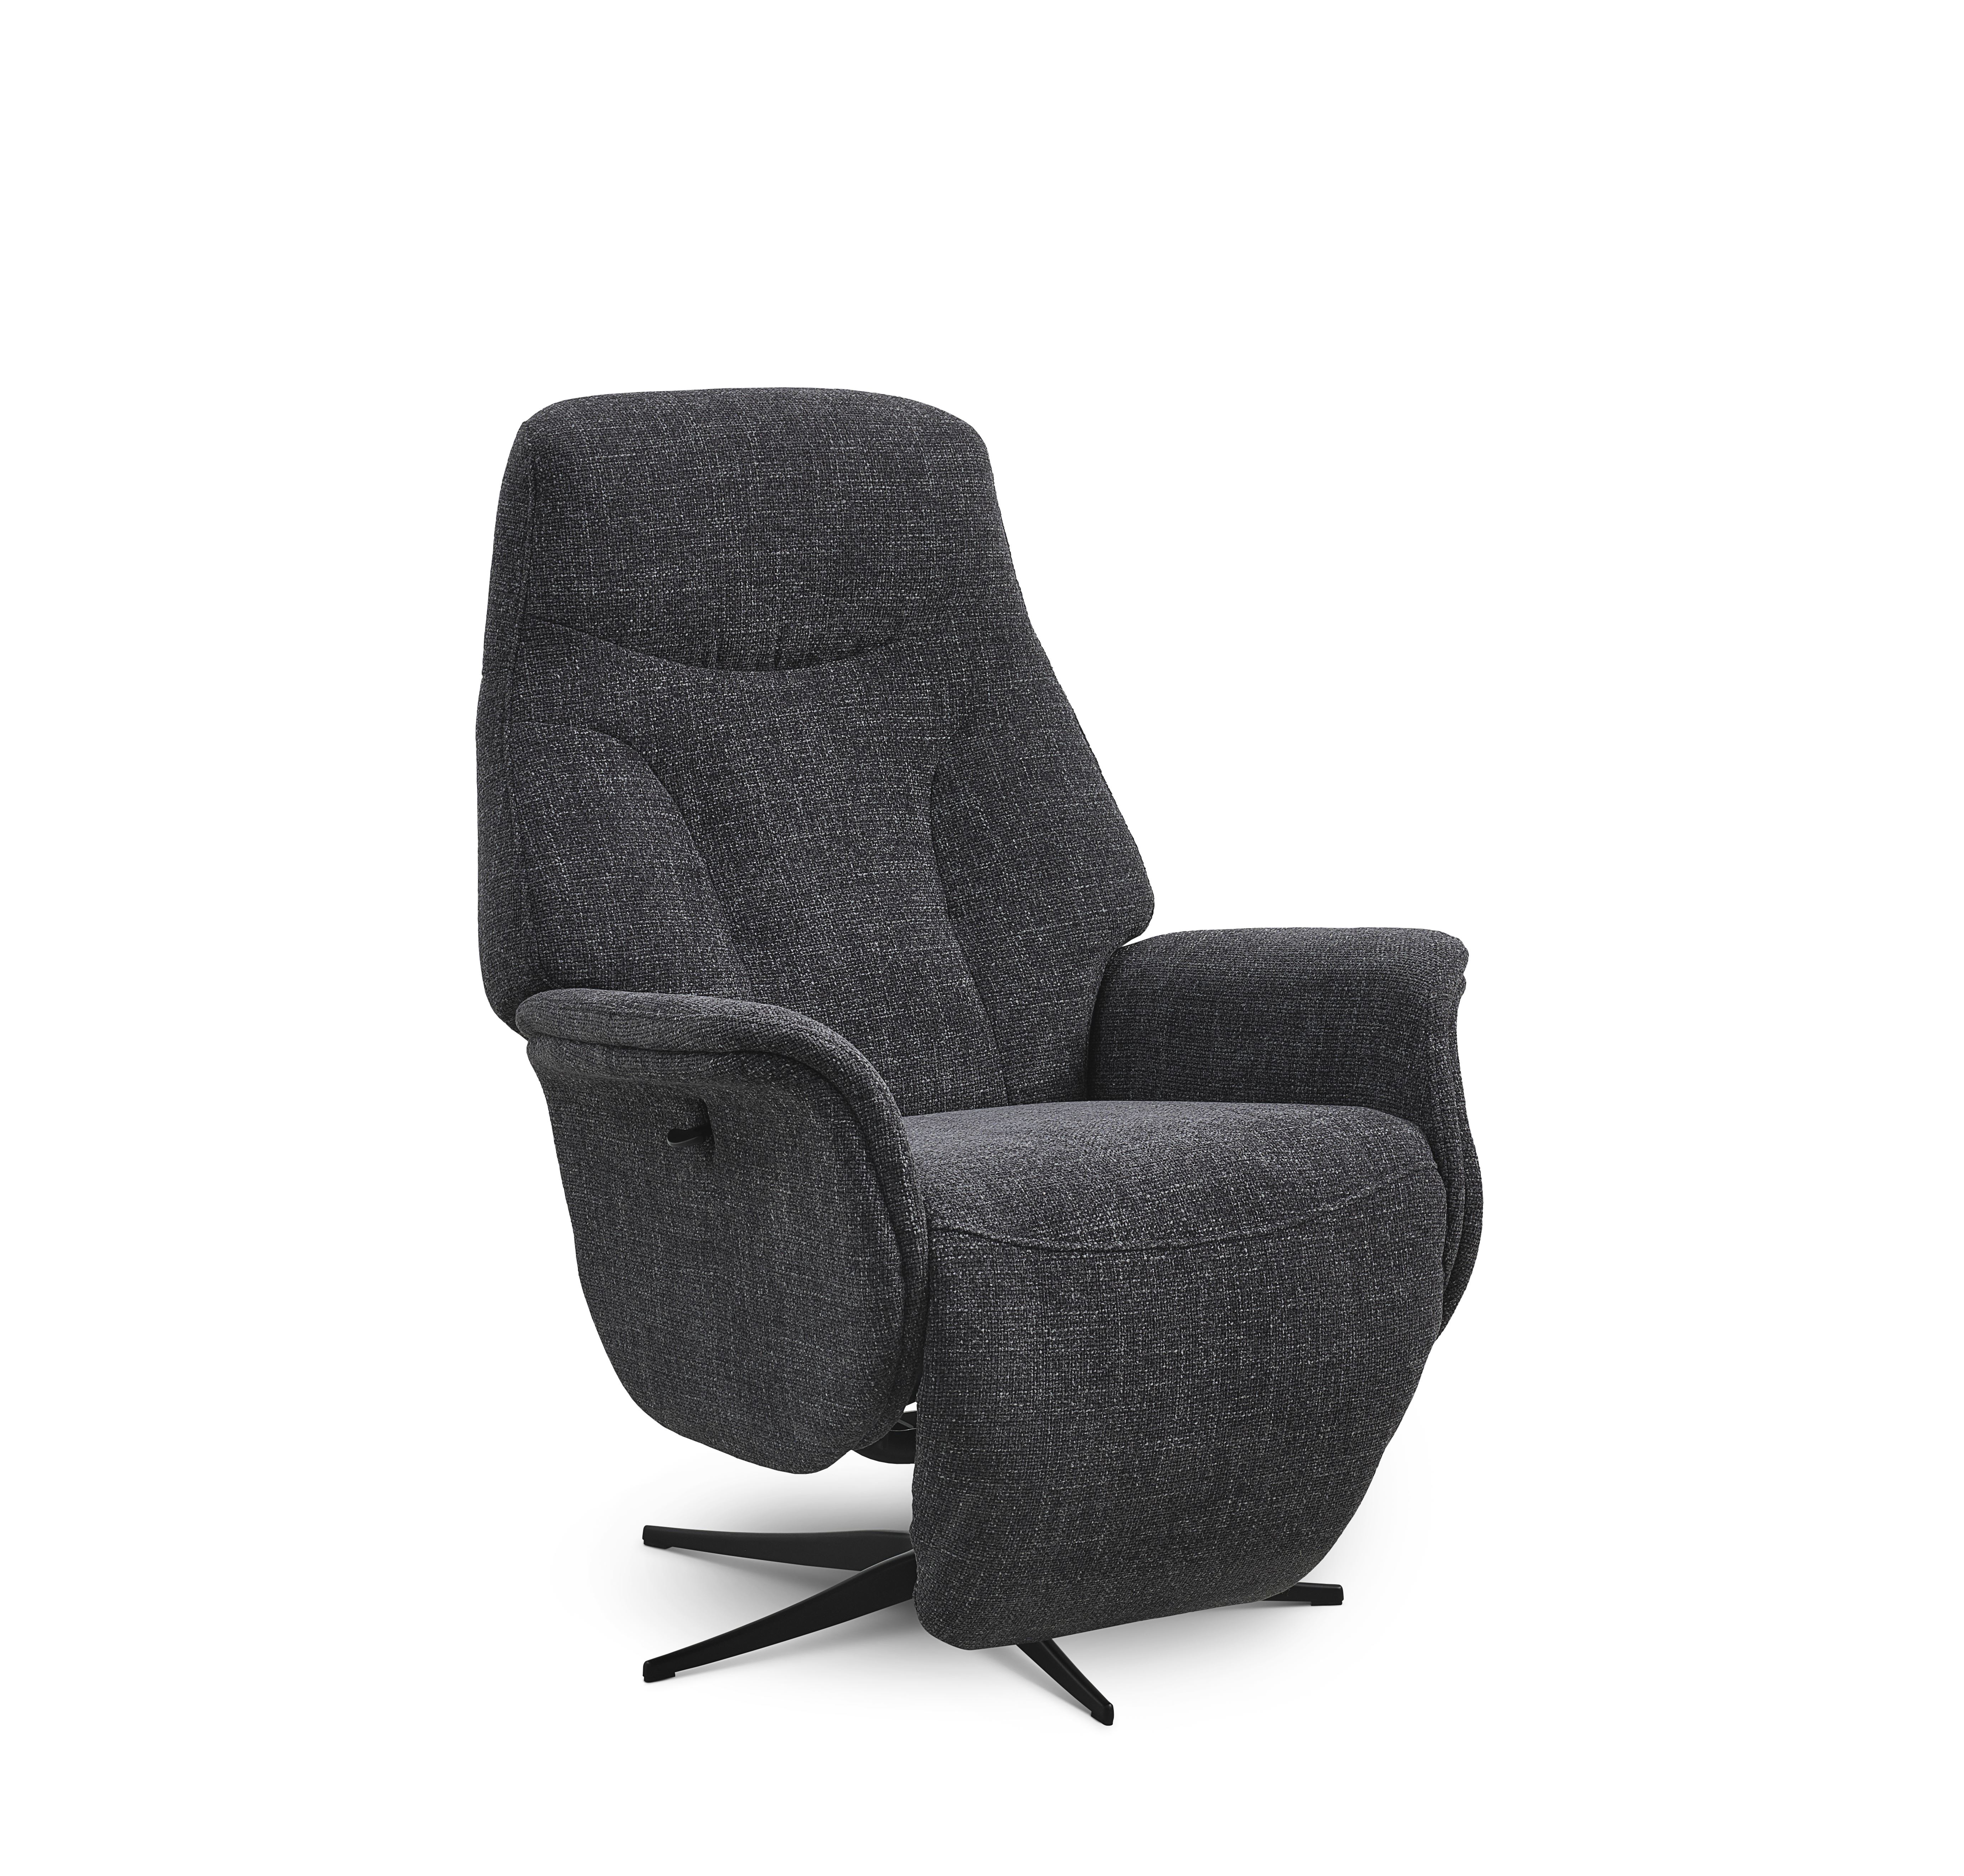 Billede af Storm recliner stol, manuel, m. armlæn, vippefunktion, fodskammel - antracitgrå stof/sort metal